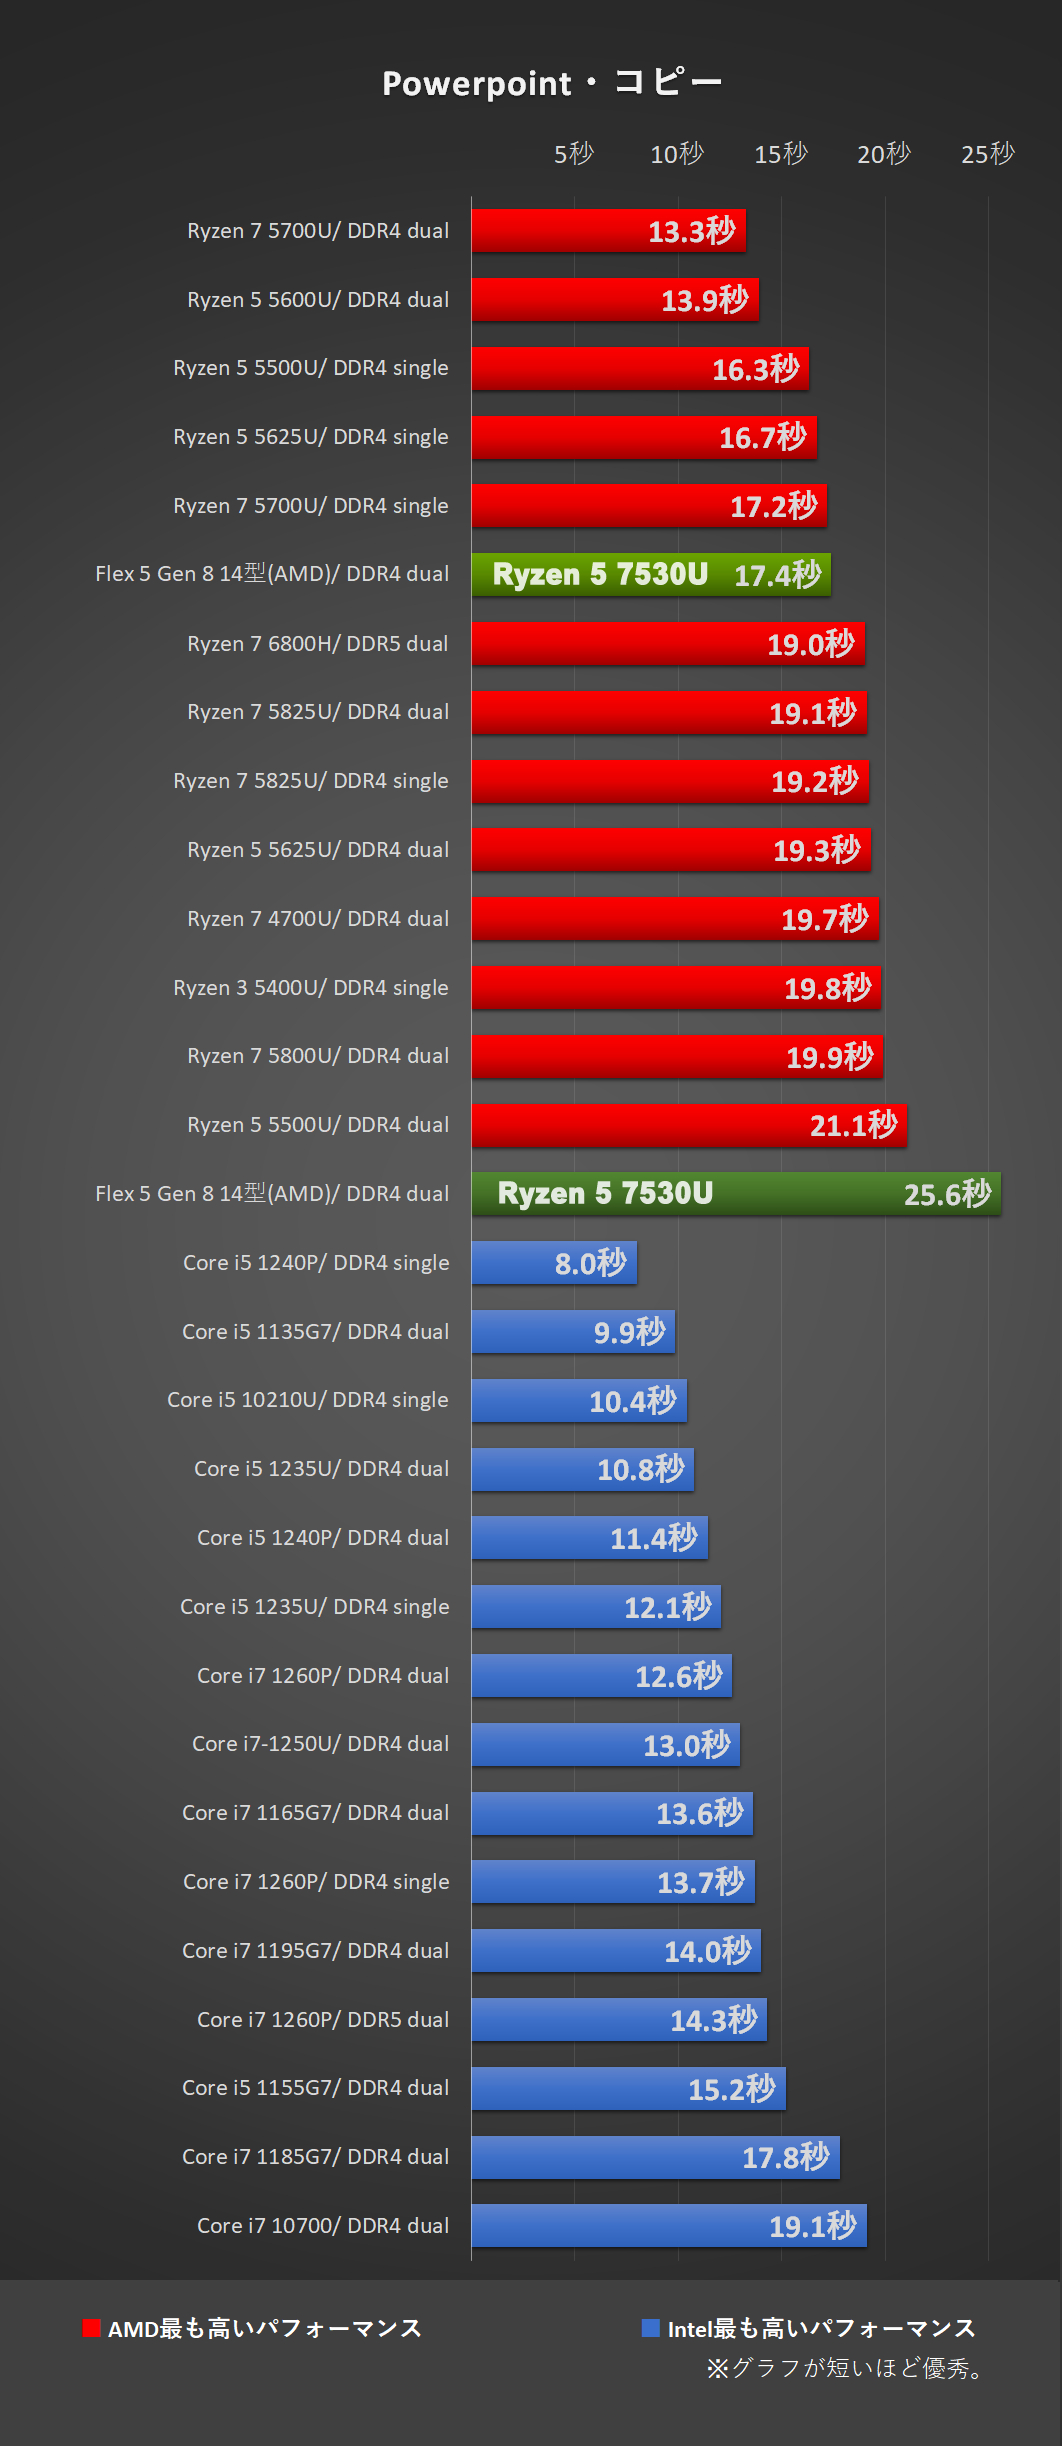 「Flex 5 Gen 8 14型(AMD)」Ryzen 5 7530Uにて、Powerpoint・コピー処理時間比較